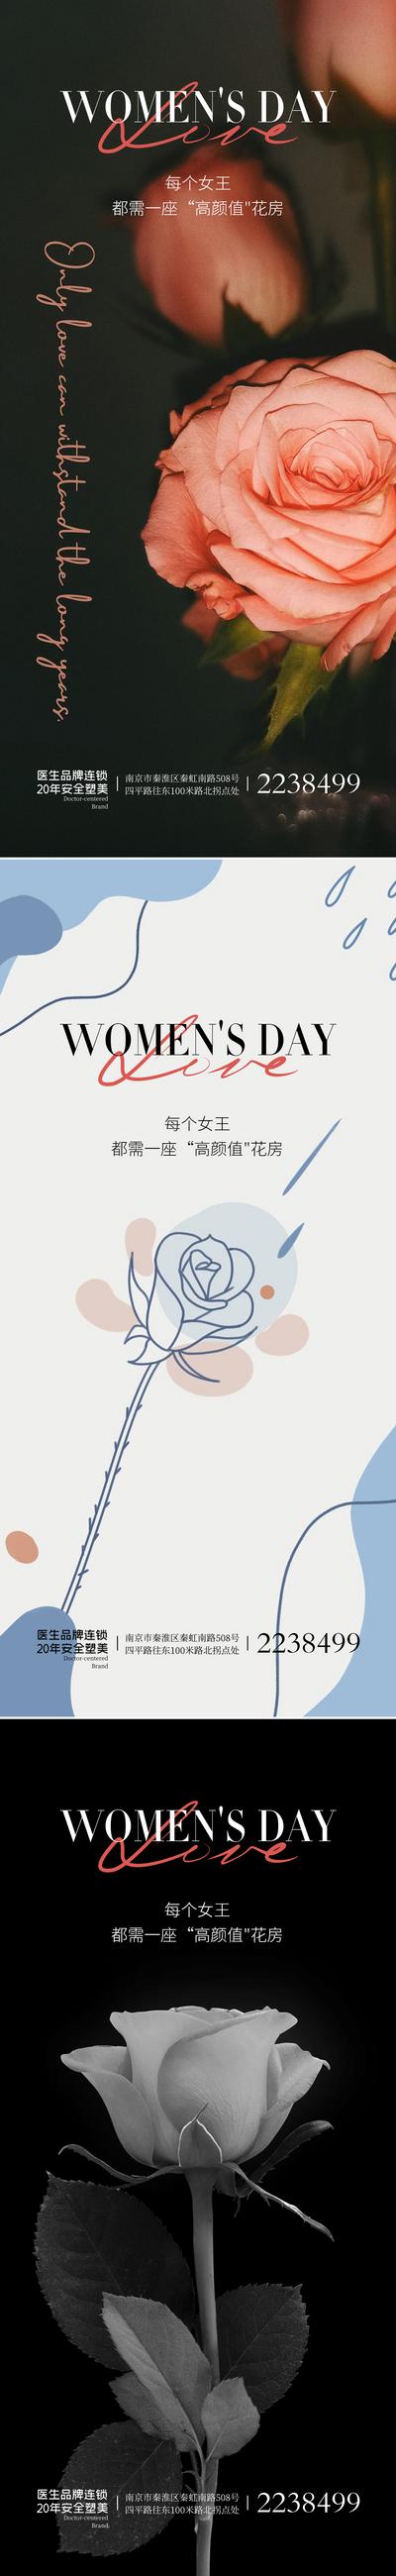 南门网 广告 海报 节气 妇女节 38 系列 鲜花